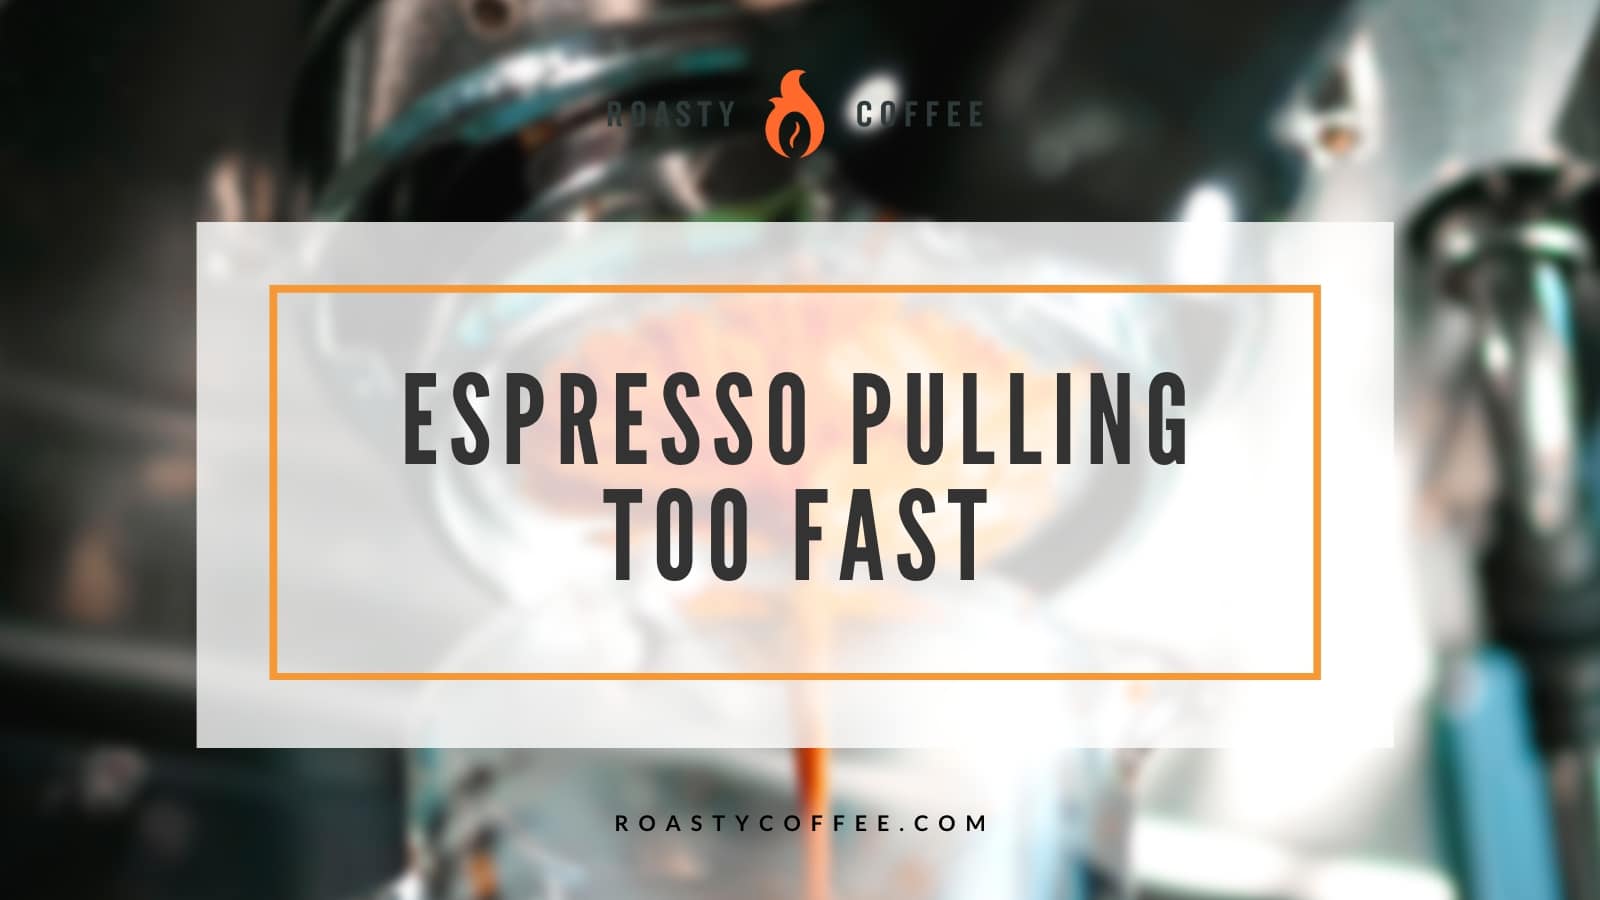 ¿Tu espresso se está preparando demasiado rápido? Aquí tienes una solución rápida y sencilla.